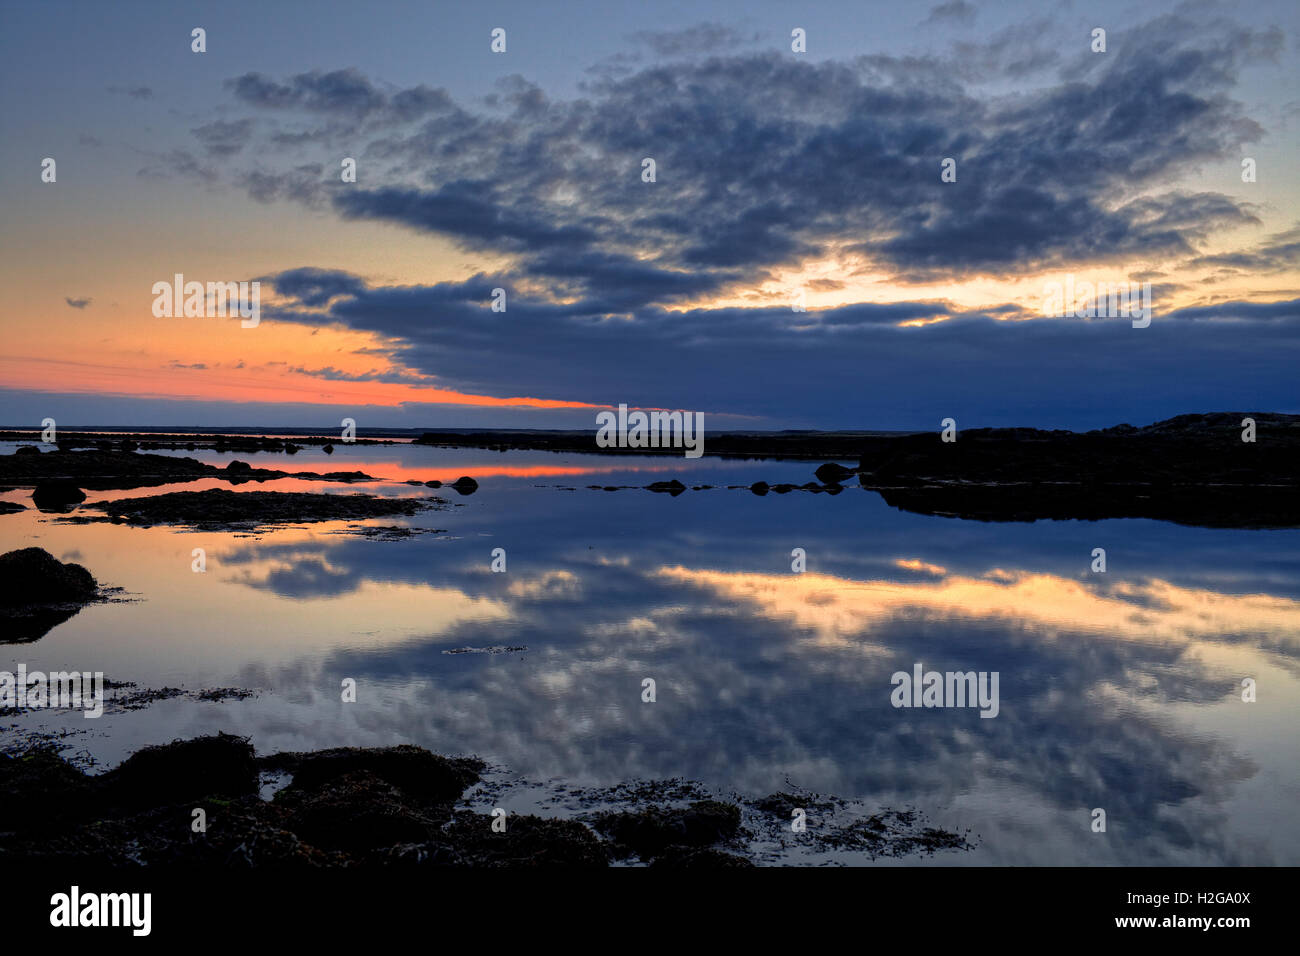 Sunset over the coastline, Reykjanes Peninsula, Iceland Stock Photo